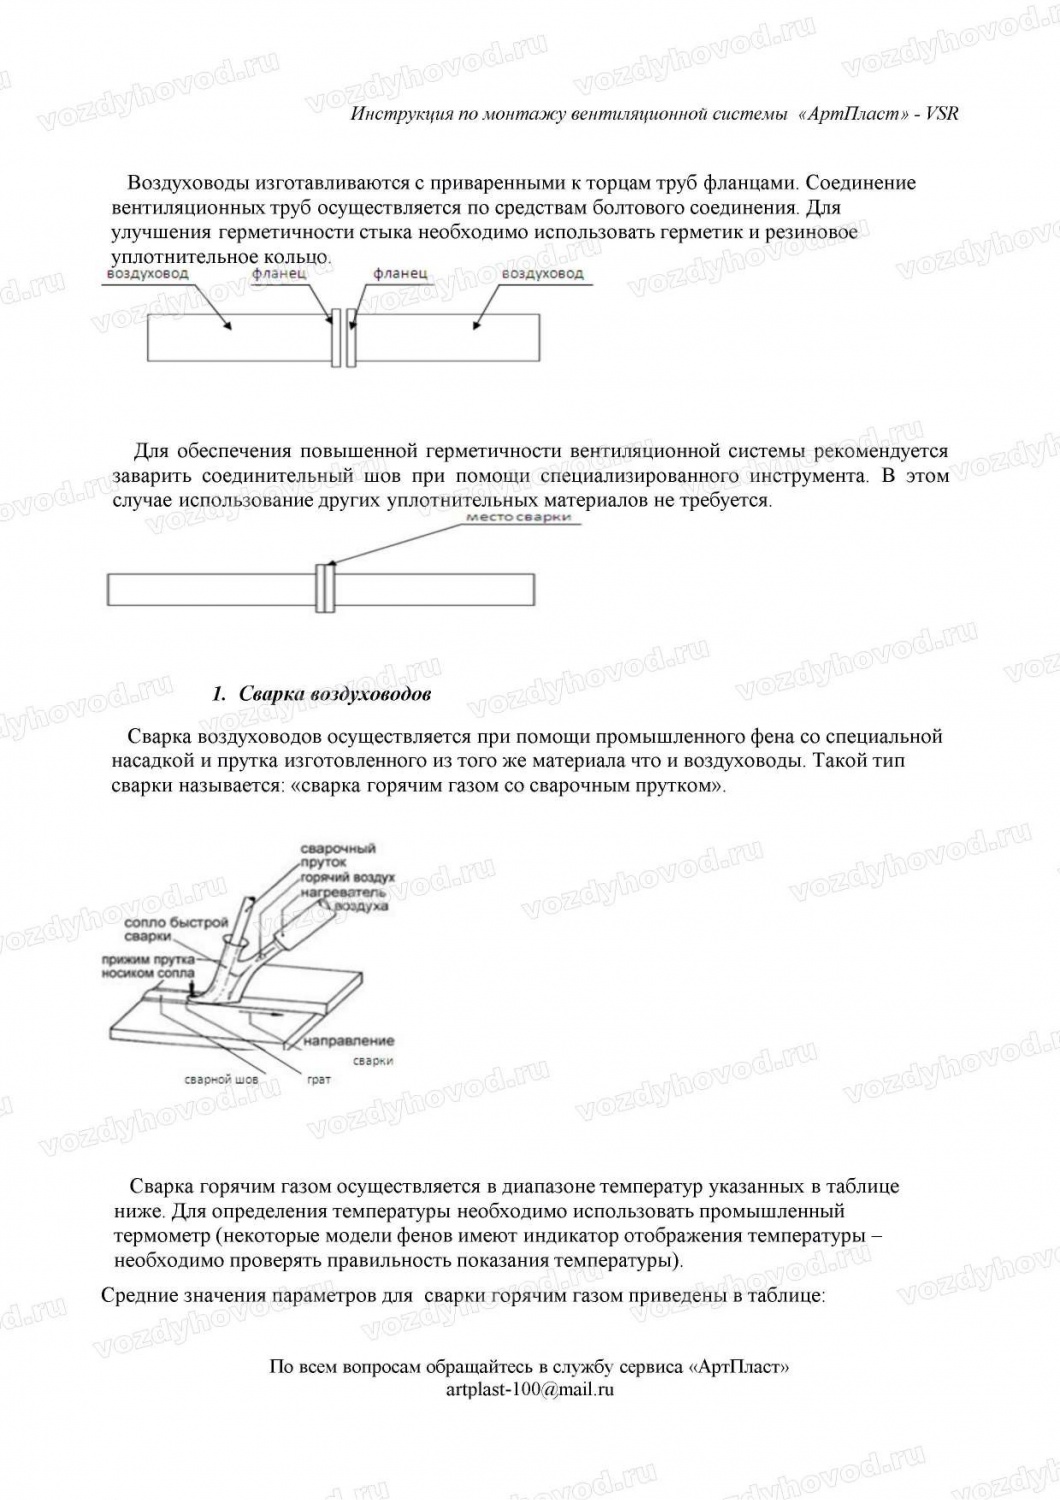 Инструкция по сварке воздуховодов из полипропилена страница 3